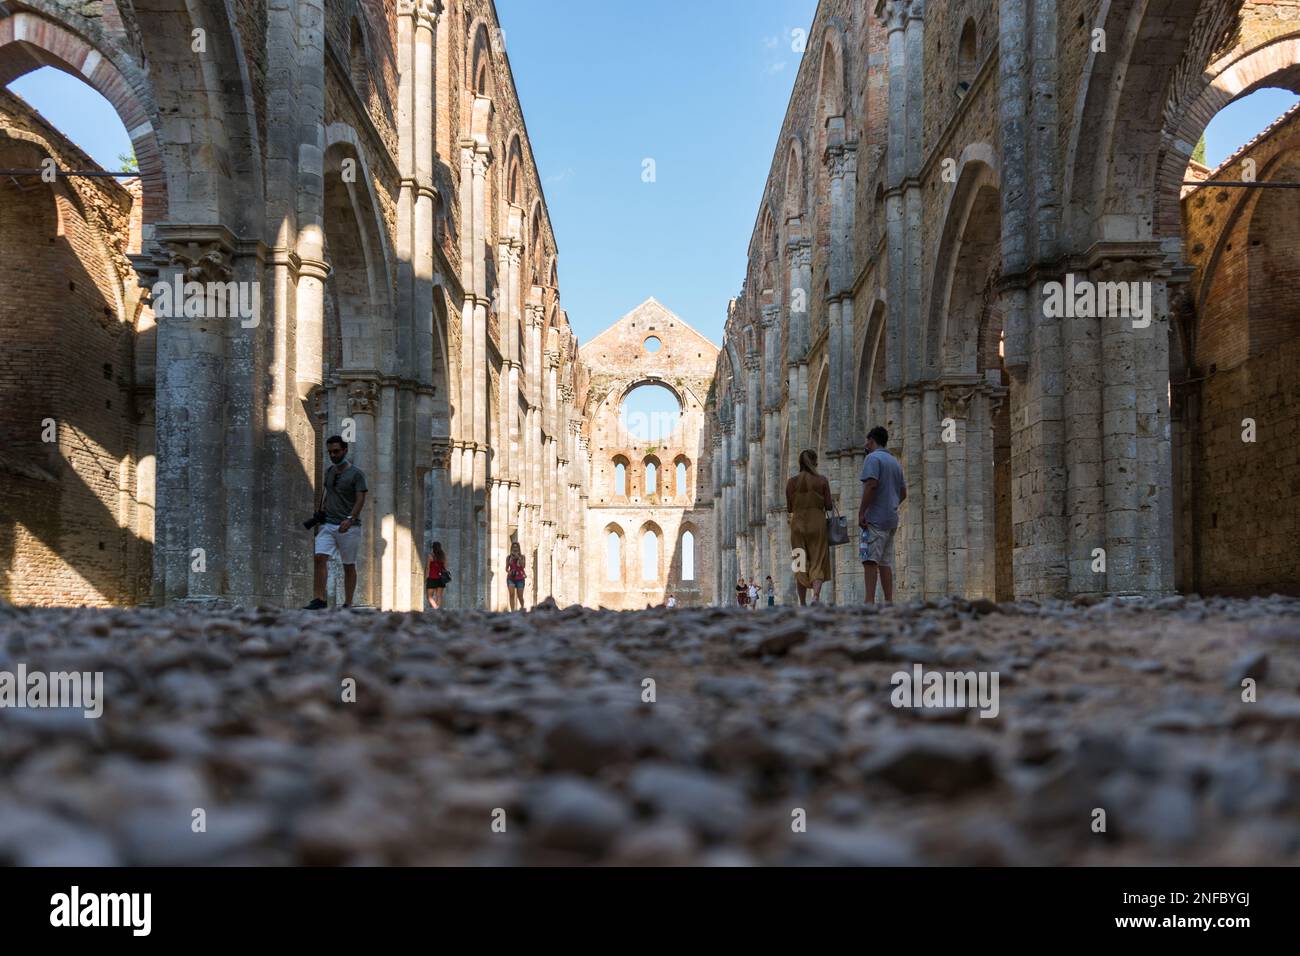 San Galgano, Italien-august 8,2020: Touristen besuchen das Innere der Abtei und das ehemalige Kloster von San Galgano, berühmt für seine Dachlosigkeit während der Sonne Stockfoto